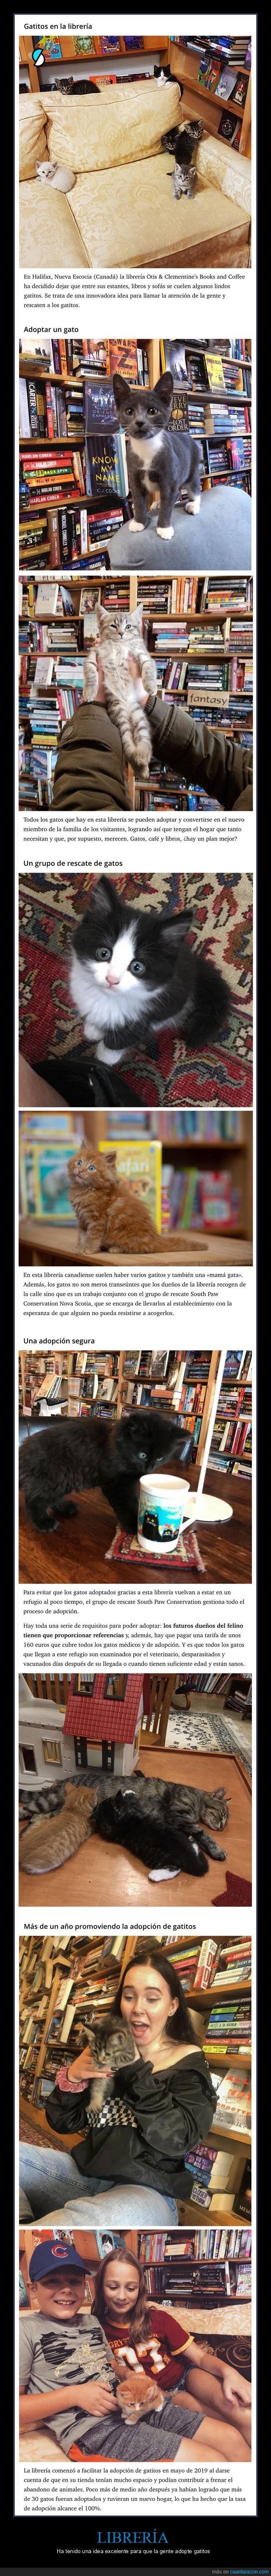 libreria,adoptar,gatos